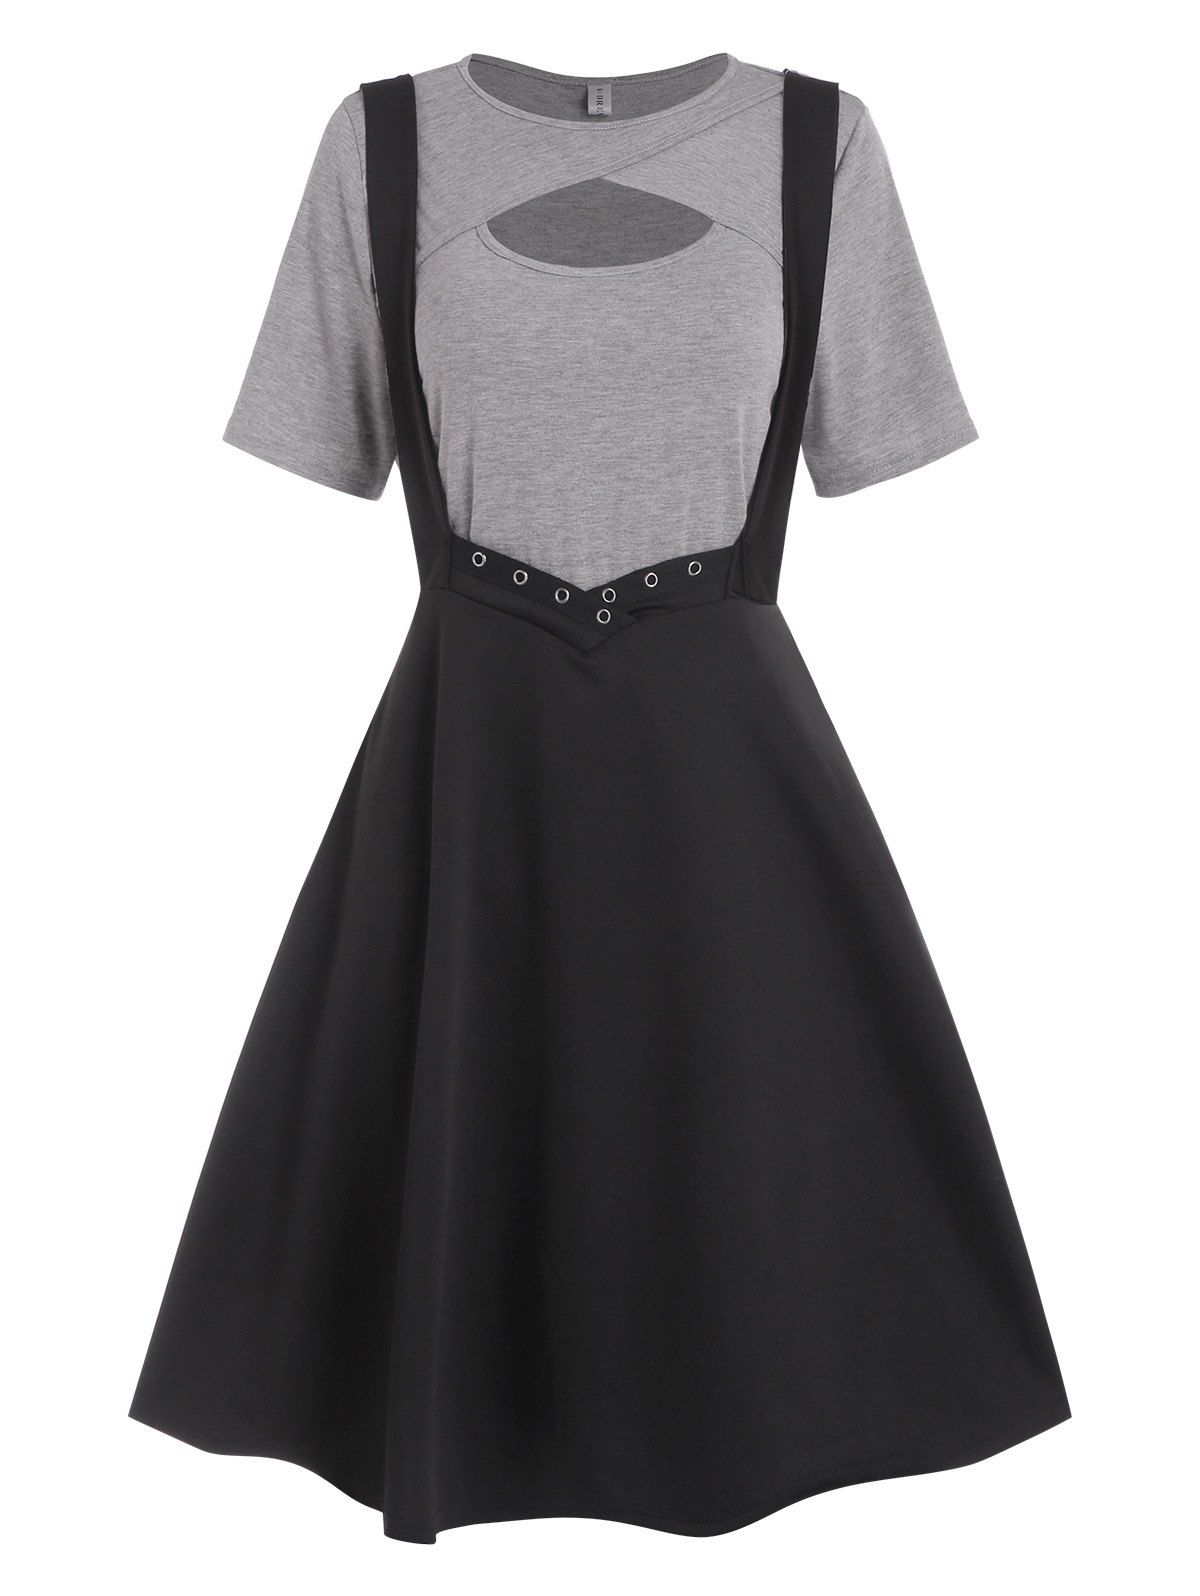 Grommet Criss Cross Cut Out Suspender Skirt Set - BLACK XL